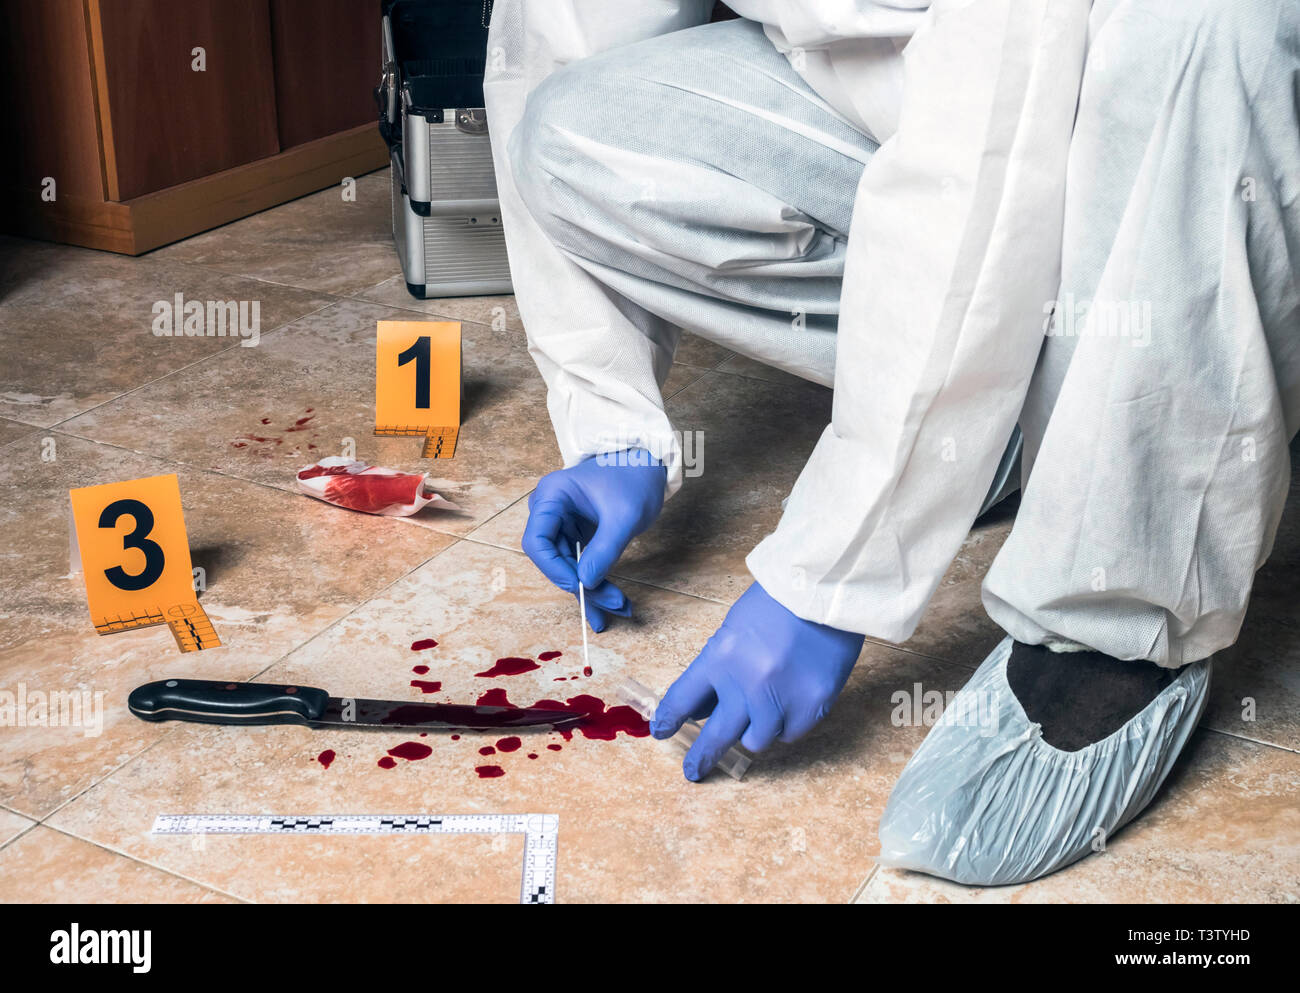 La policía experto toma muestra de sangre de una cuchilla de sangre en la escena de un crimen, imagen conceptual Foto de stock